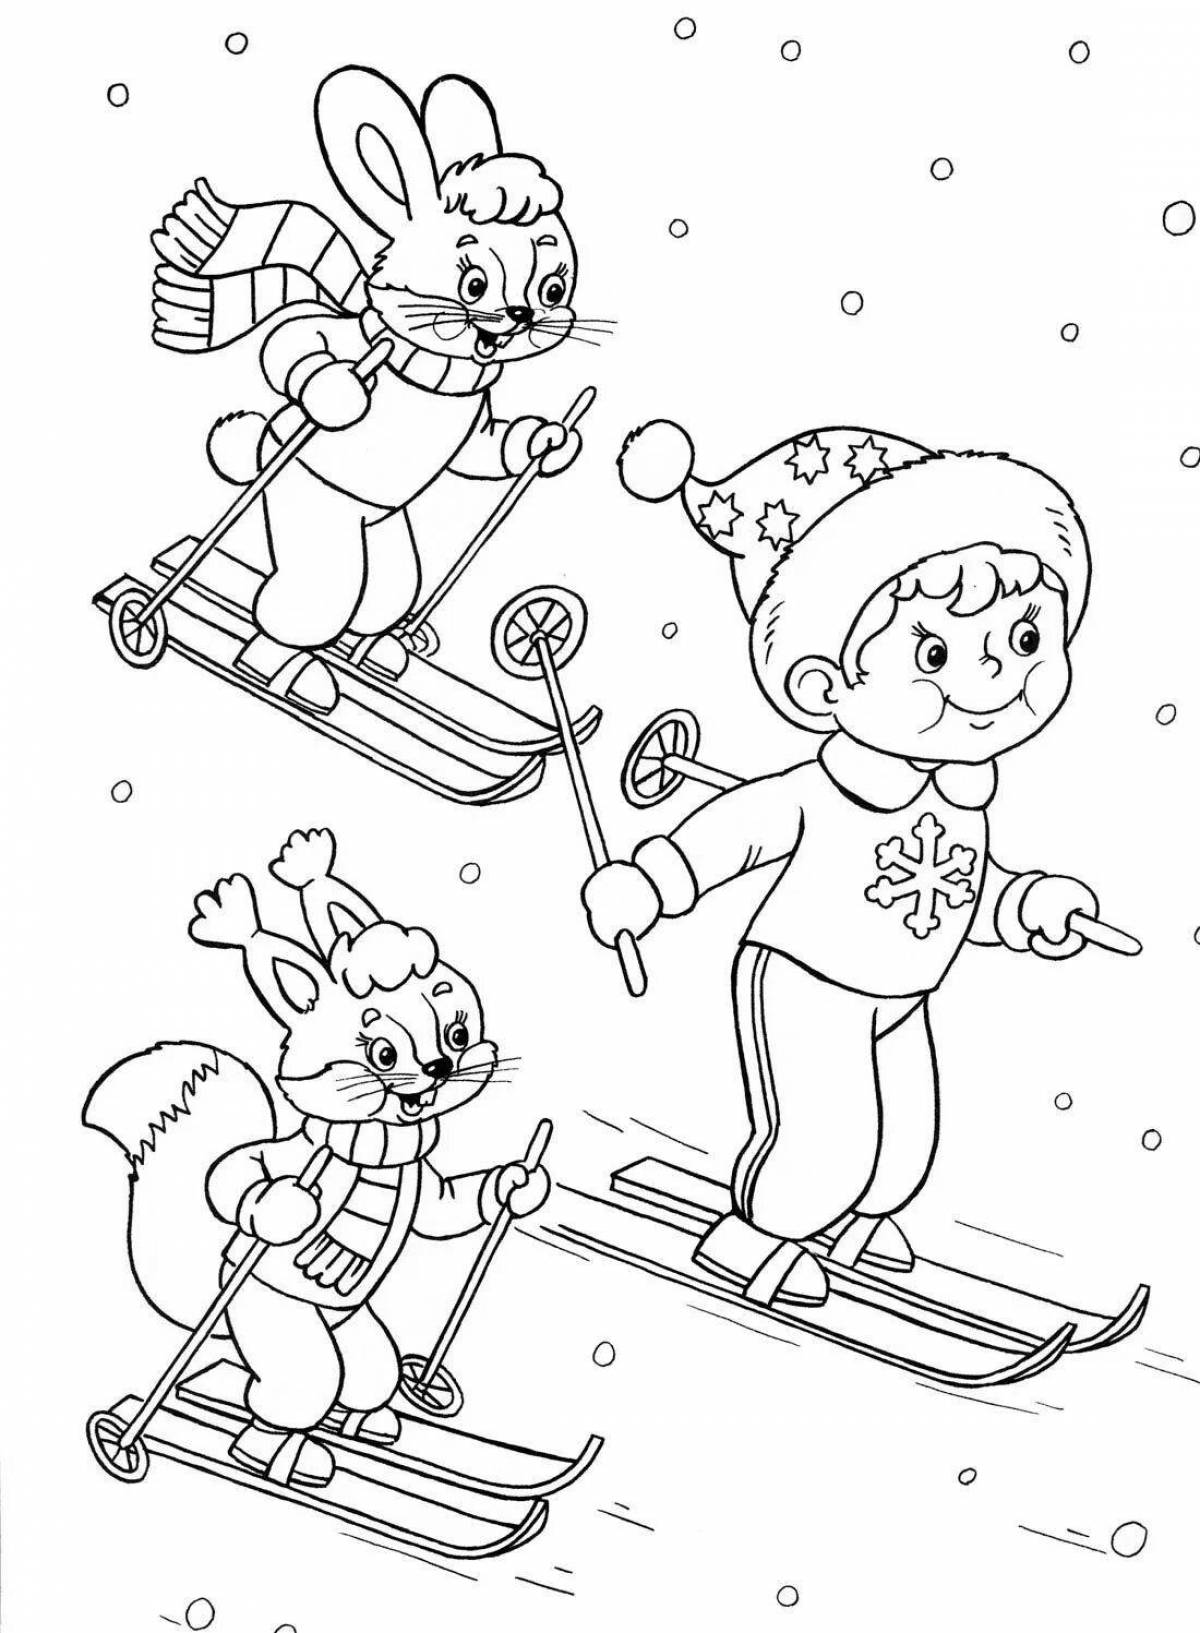 Раскраска Олимпиада зима 2014 Сочи для детей. Символы и талисманы олимпийских игр